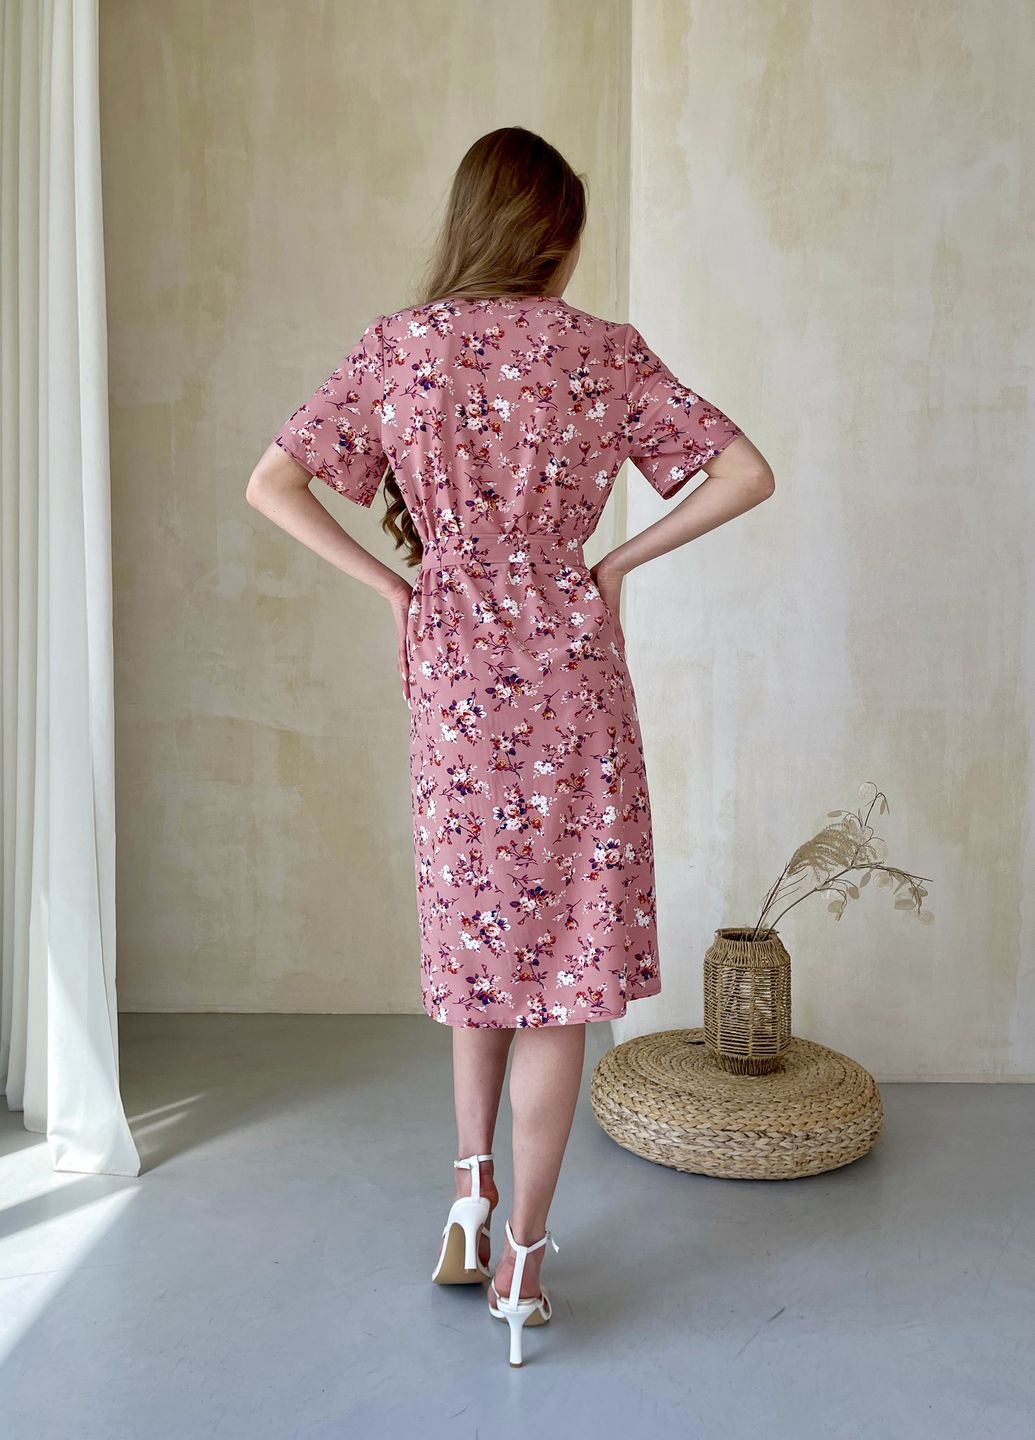 Купить Женское платьедо колена с разрезом и цветочным принтом розовое Merlini Новара 700000221, размер 42-44 (S-M) в интернет-магазине